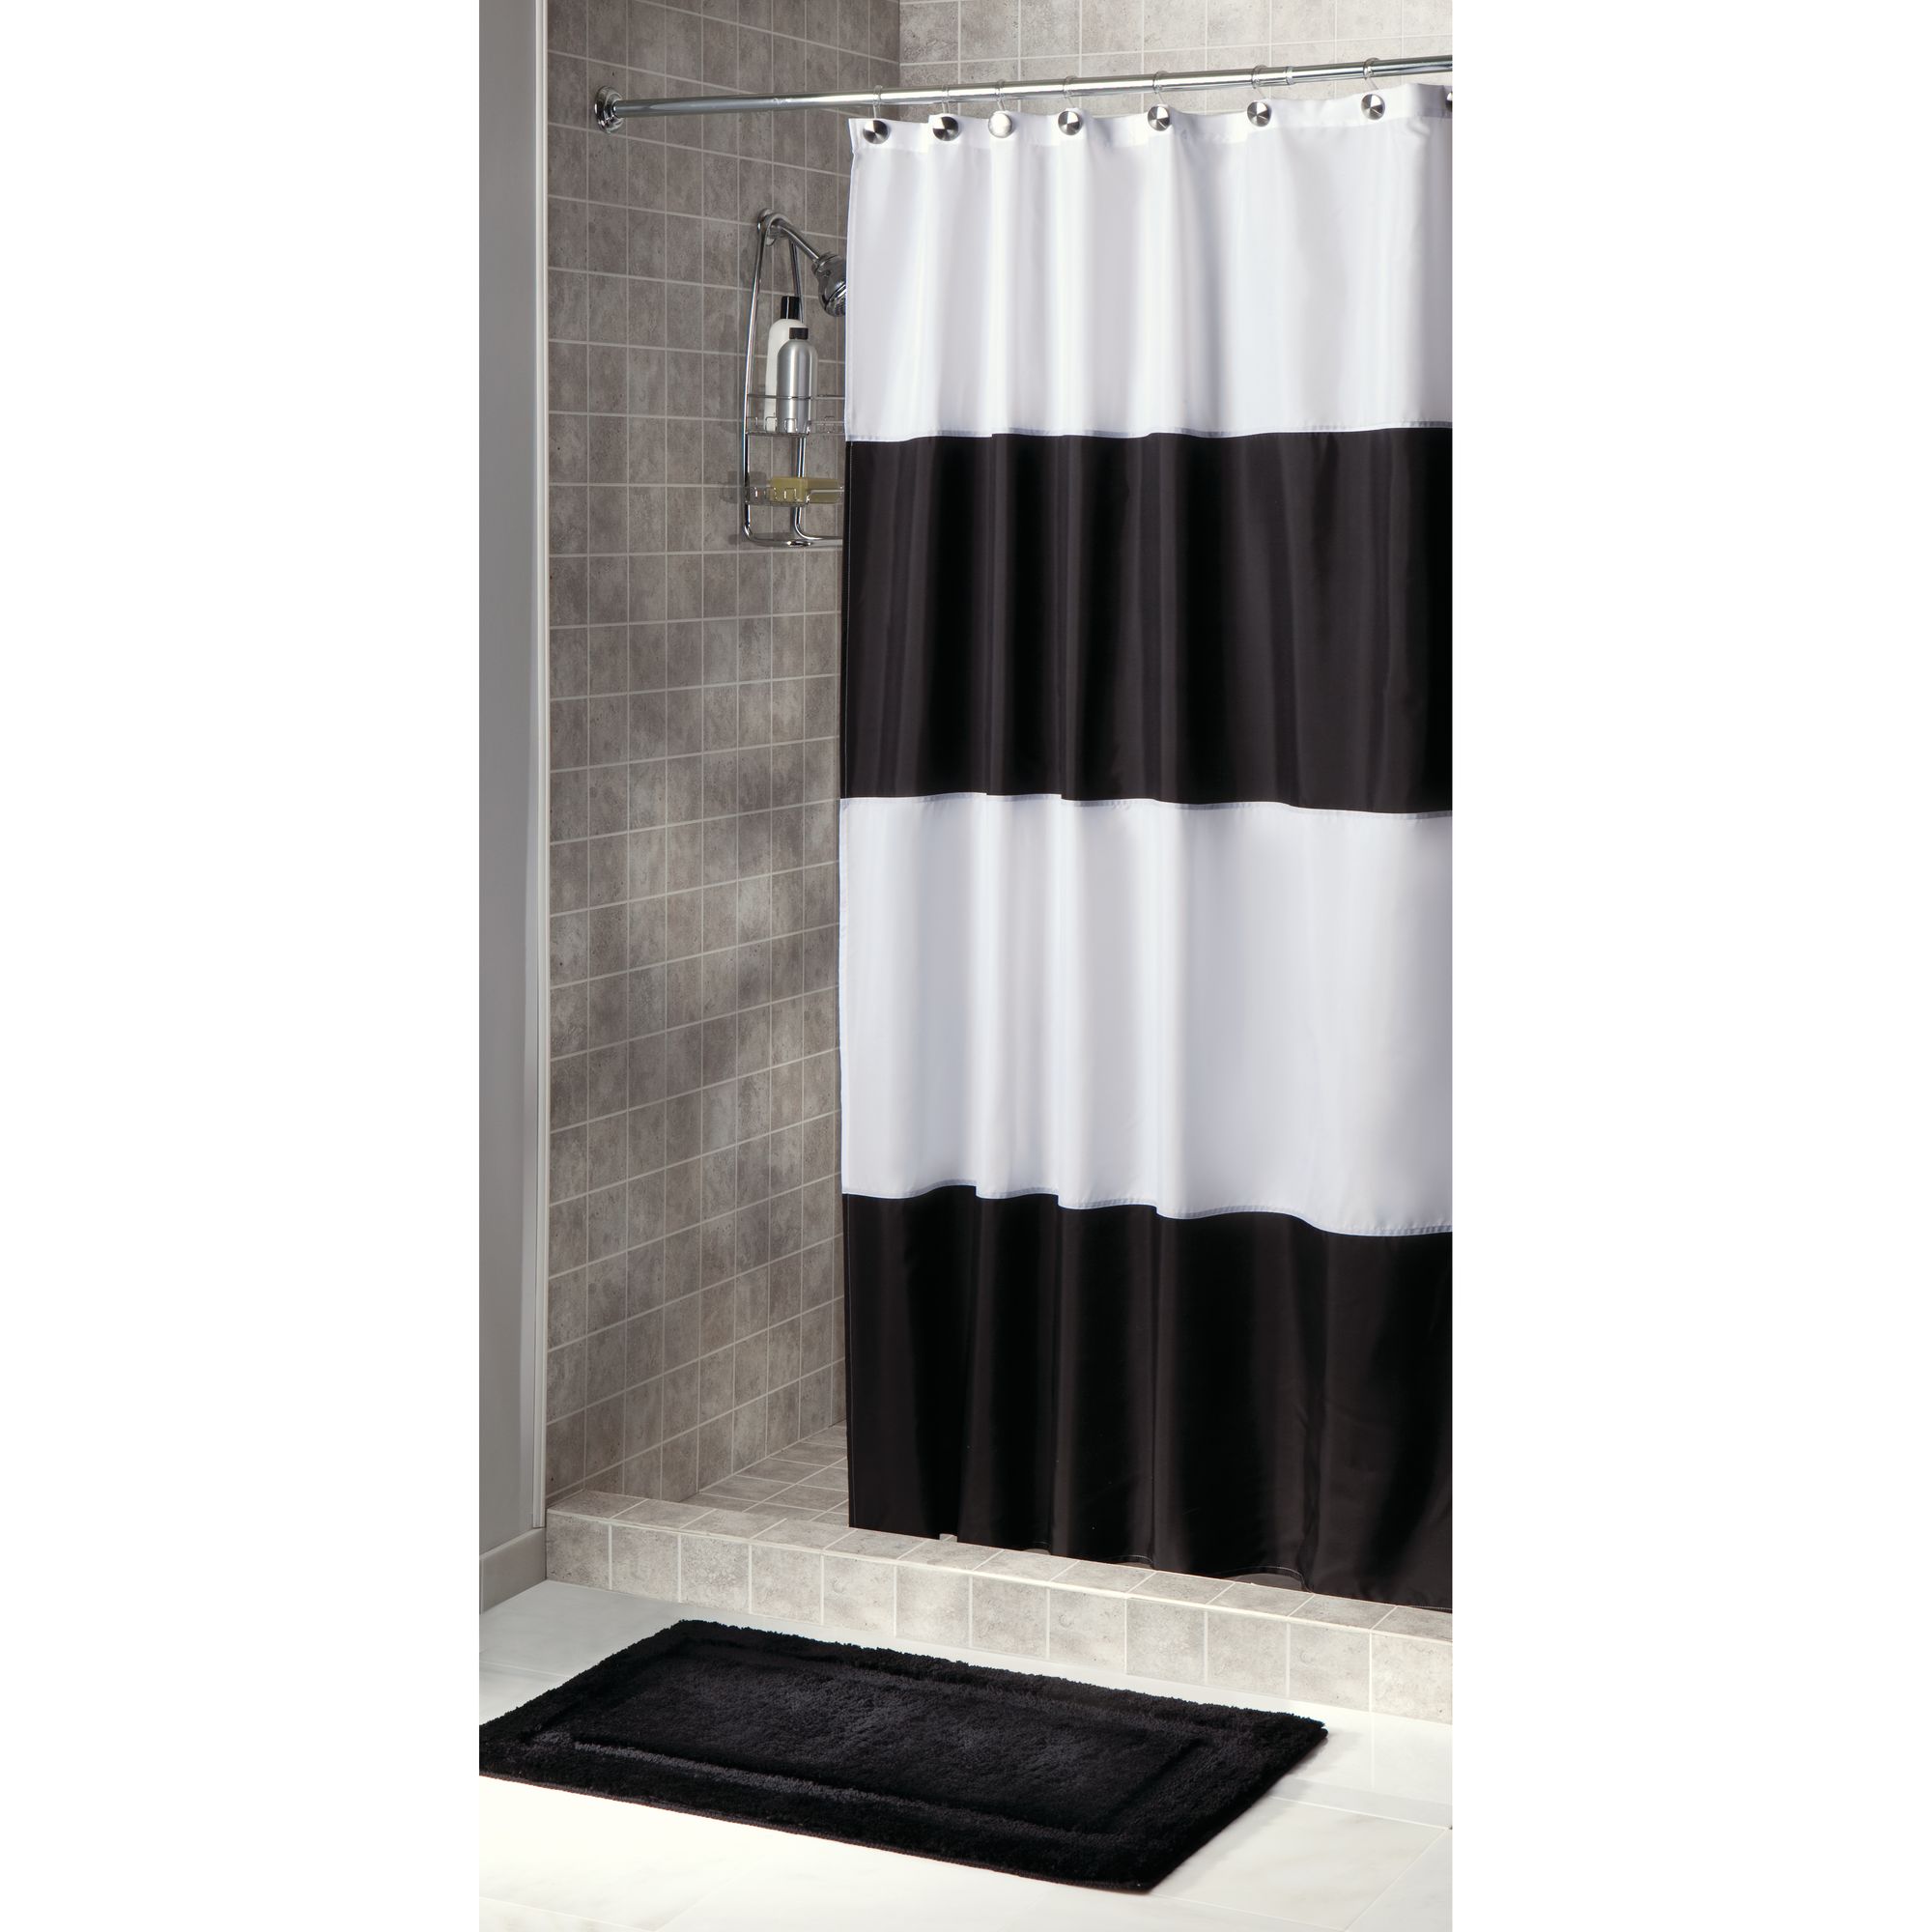 InterDesign Zeno Fabric Shower Curtain, Stall 54" x 78", Black/White - image 2 of 5